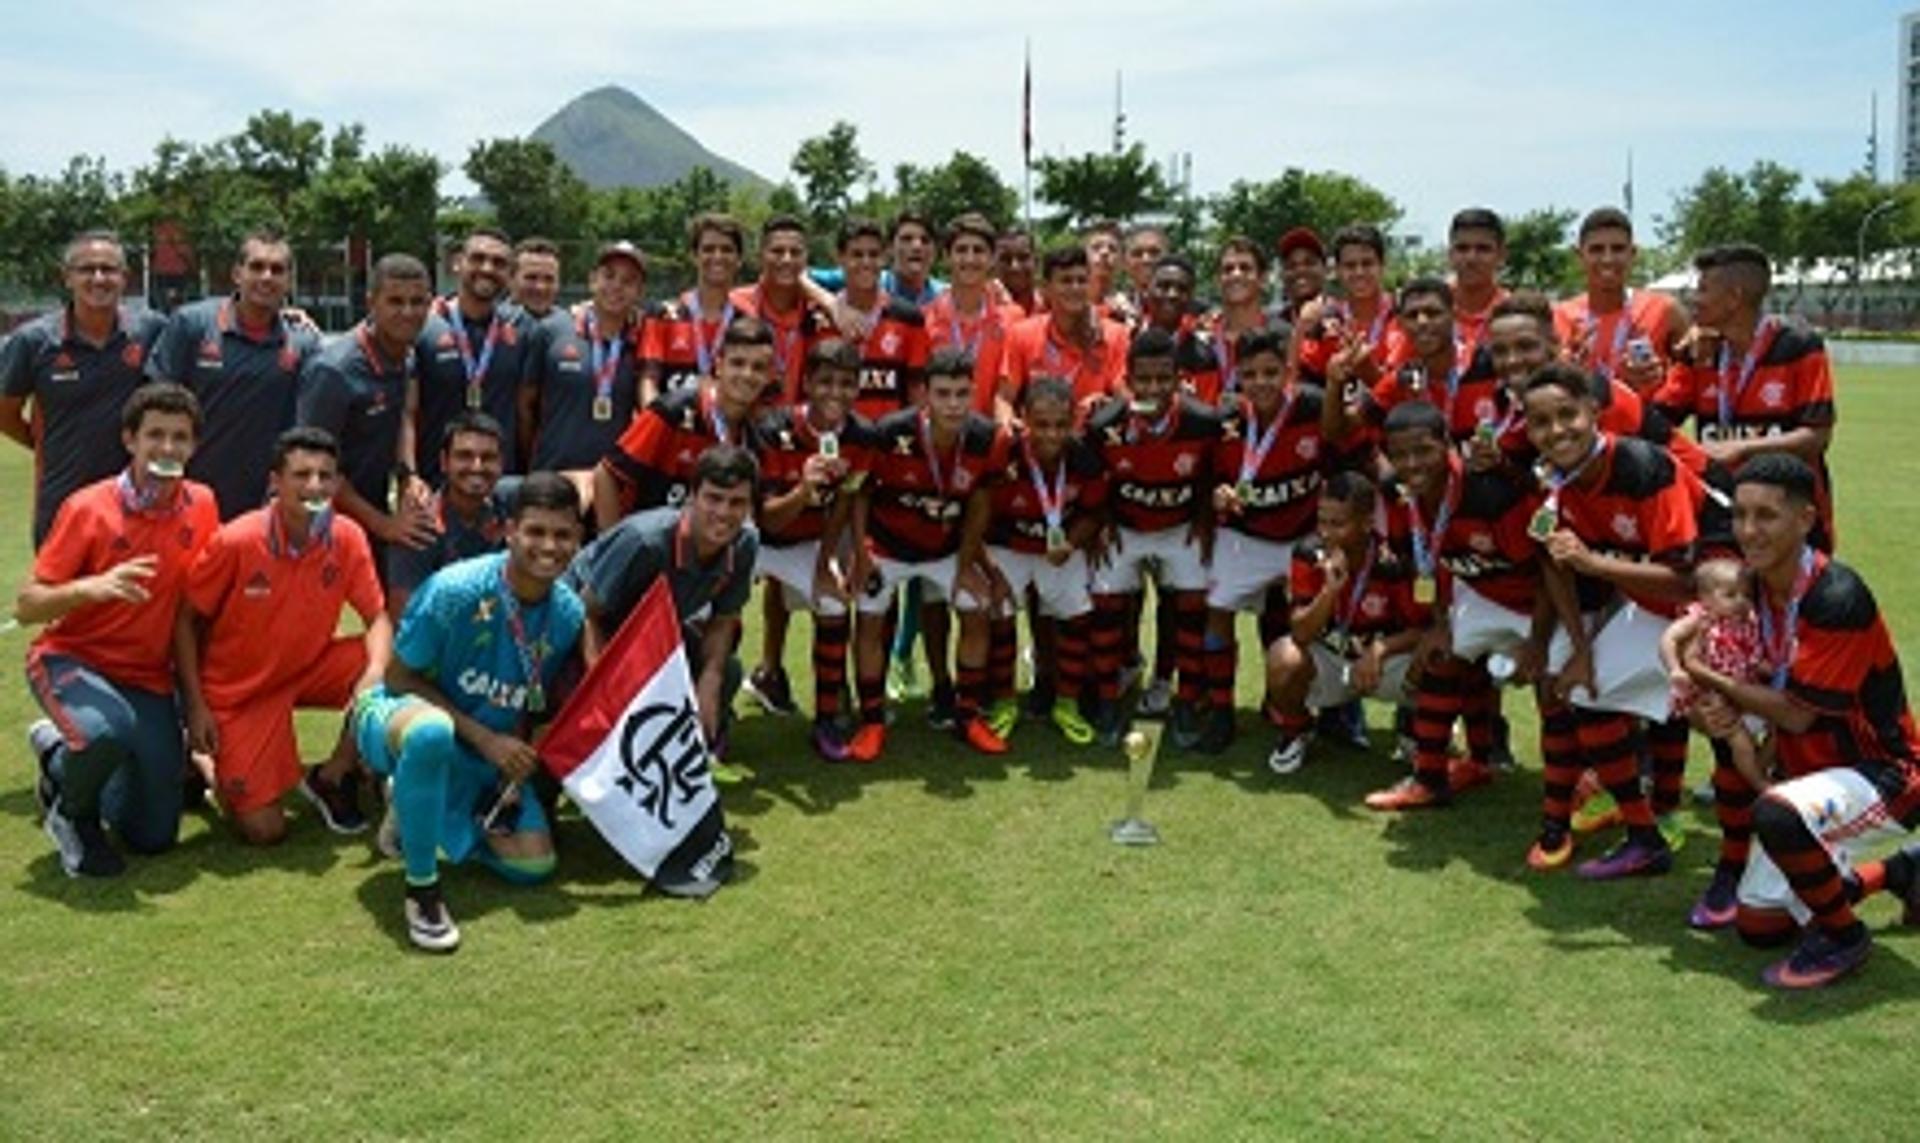 Jovens do Flamengo vibram com conquista (Marcos Faria/Divulgação)